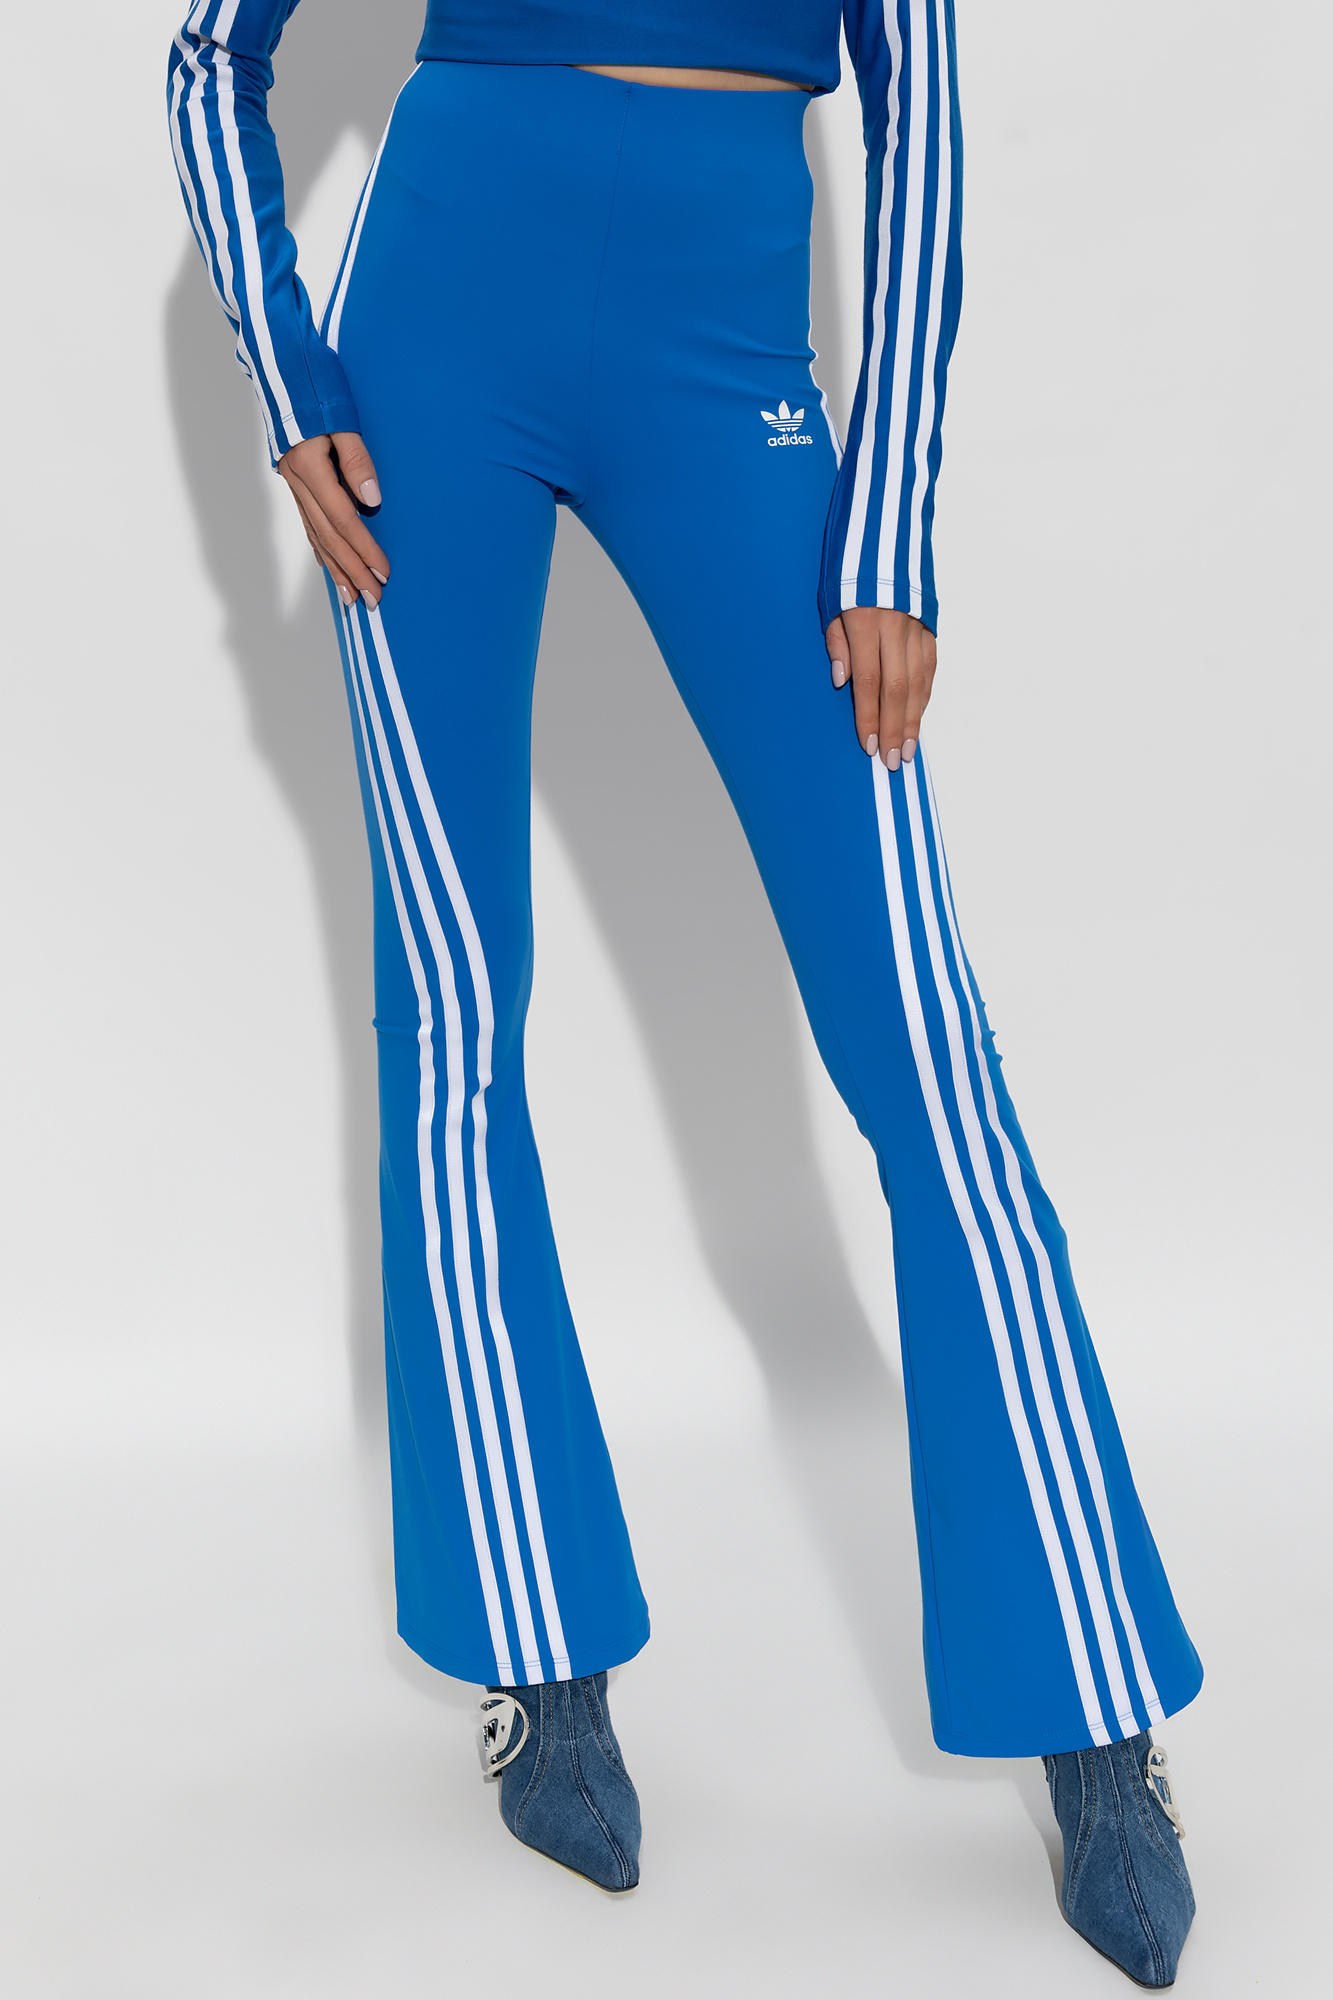 Blue Trousers with logo ADIDAS Originals - Vitkac Canada